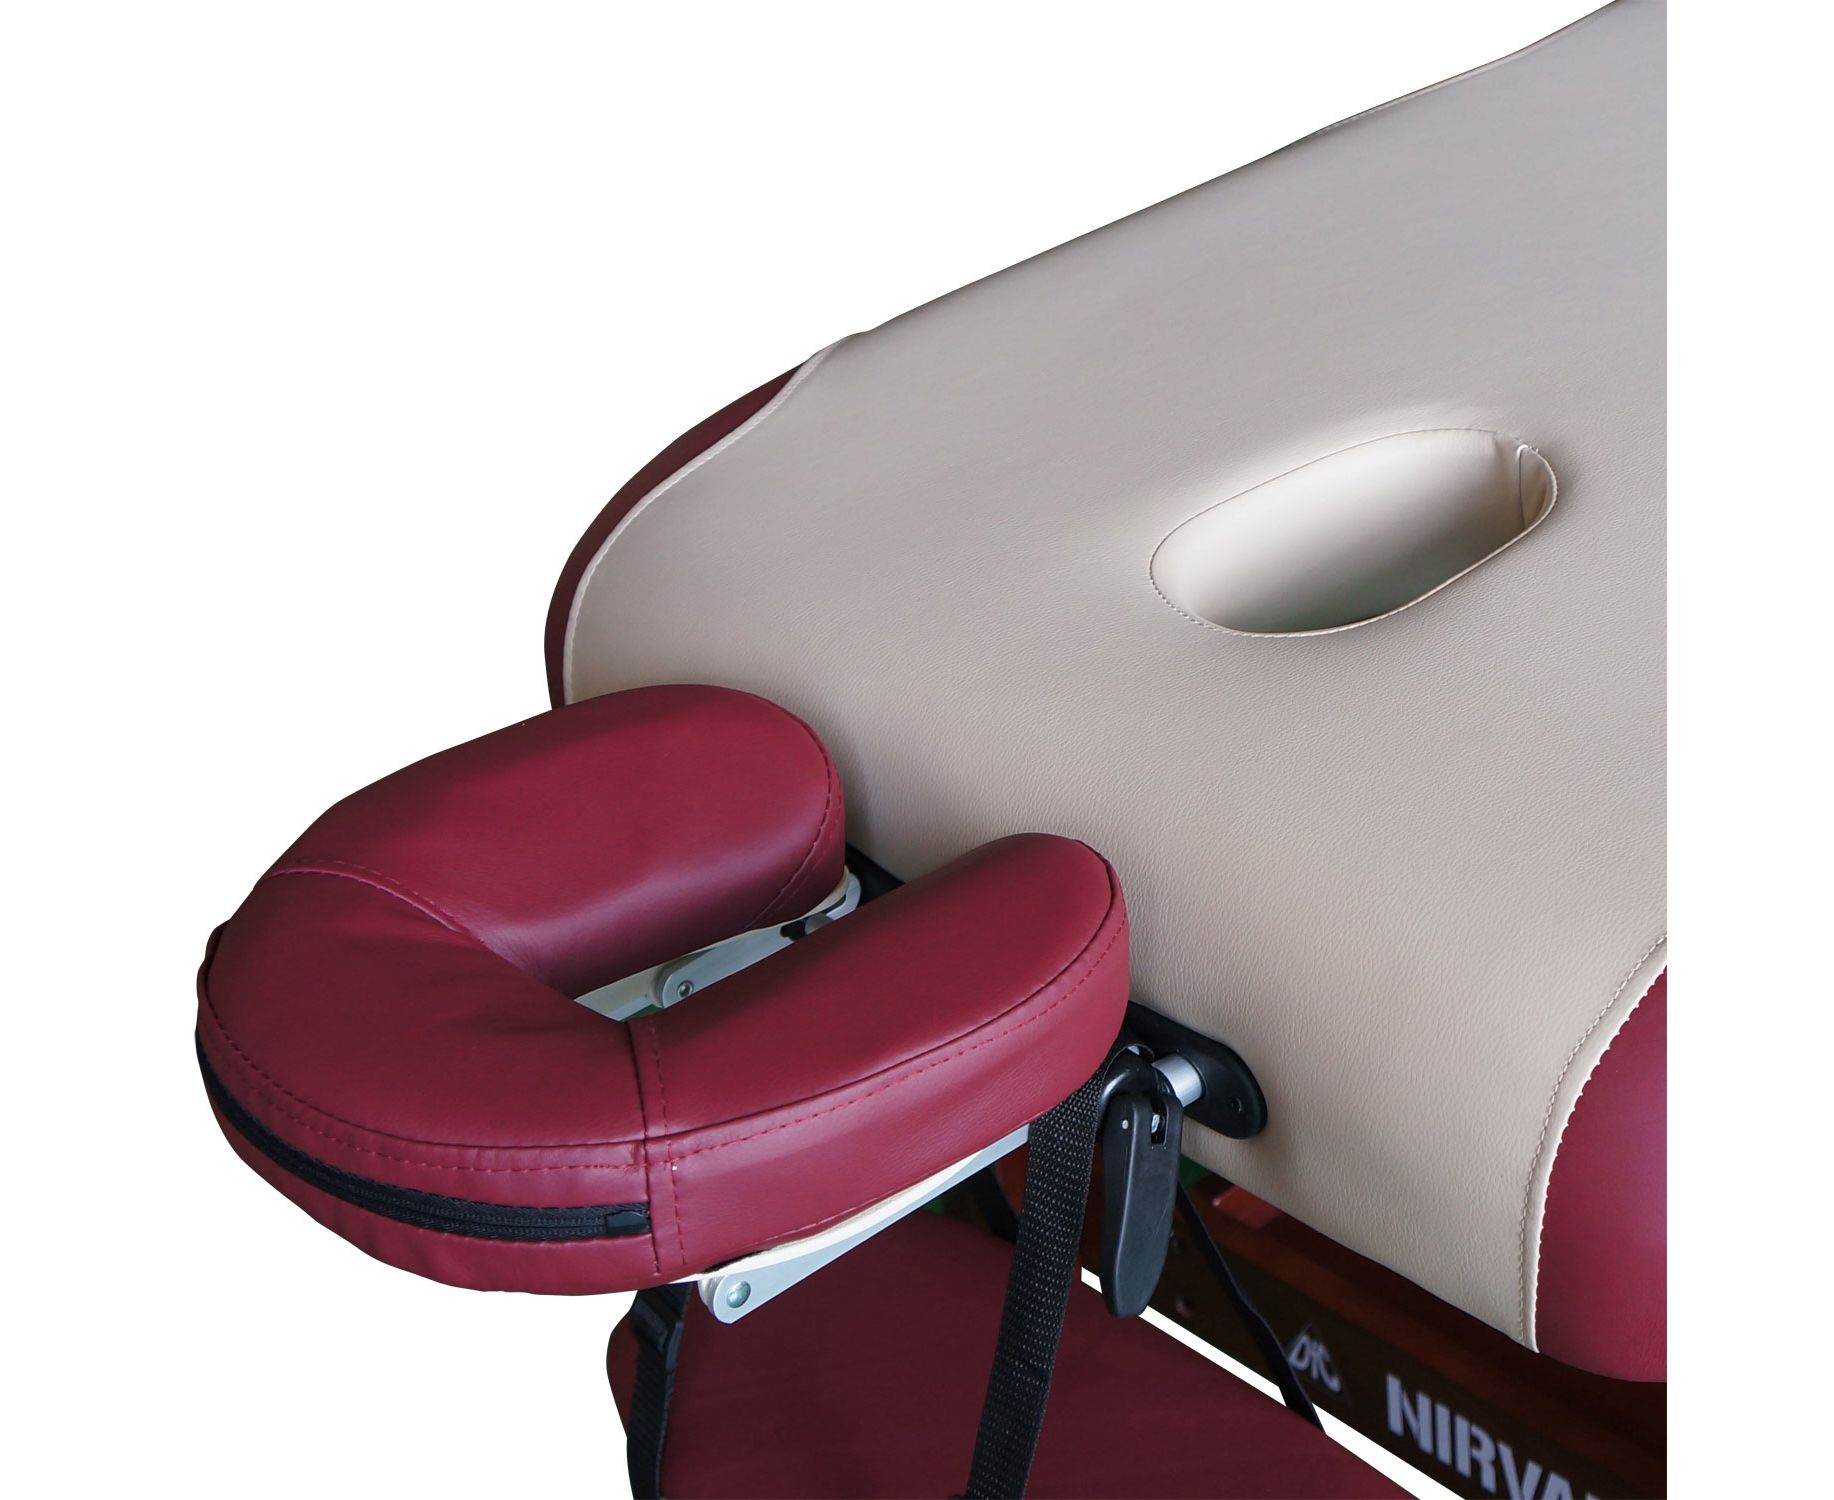 Фото массажный стационарный стол dfc nirvana superior, цвет бежево-винный